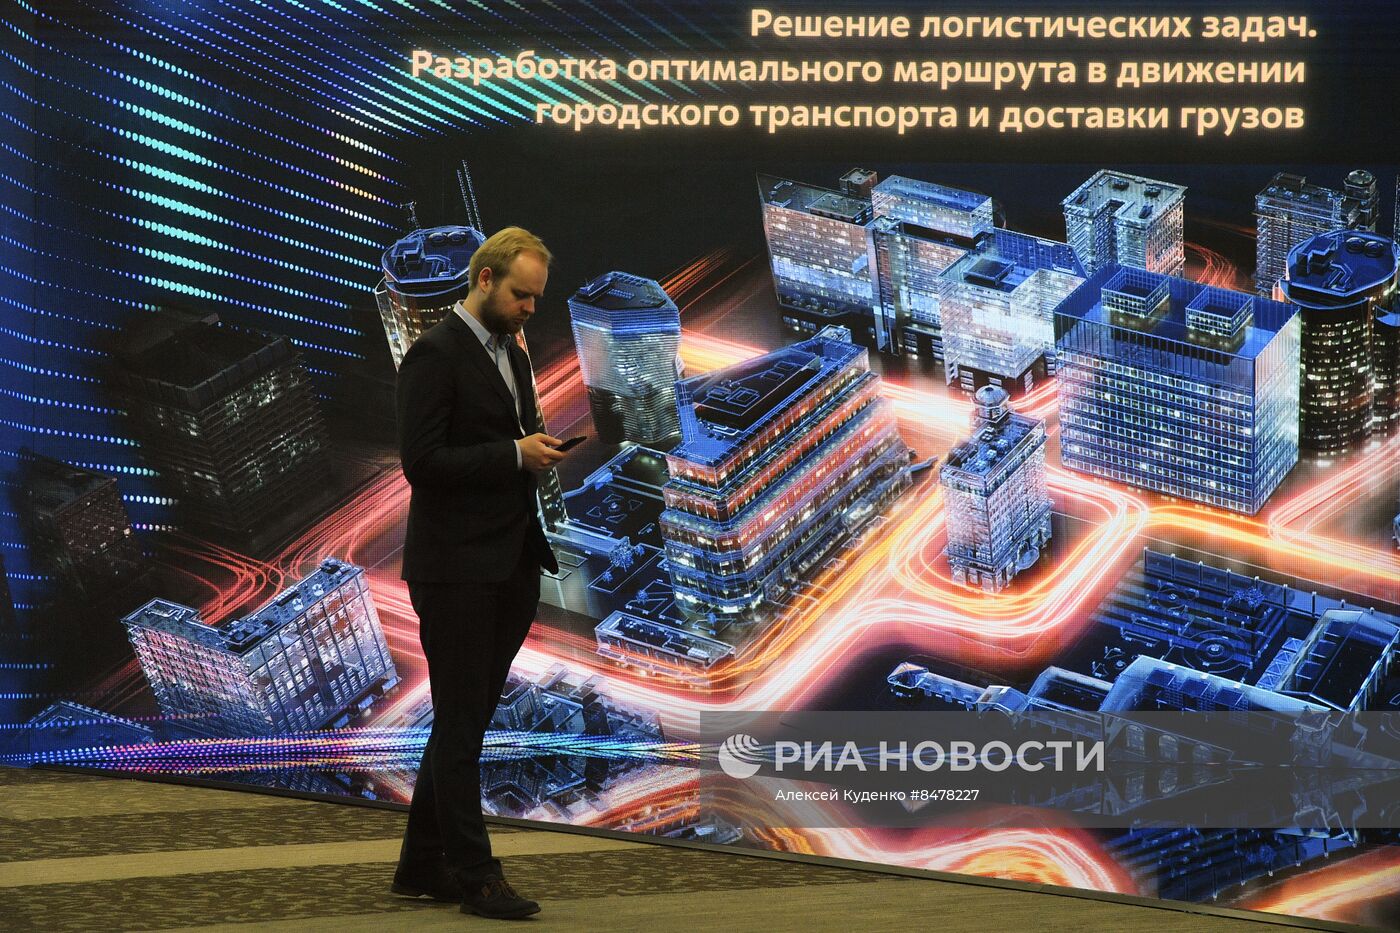 Форум будущих технологий "Вычисления и связь. Квантовый мир" в Москве